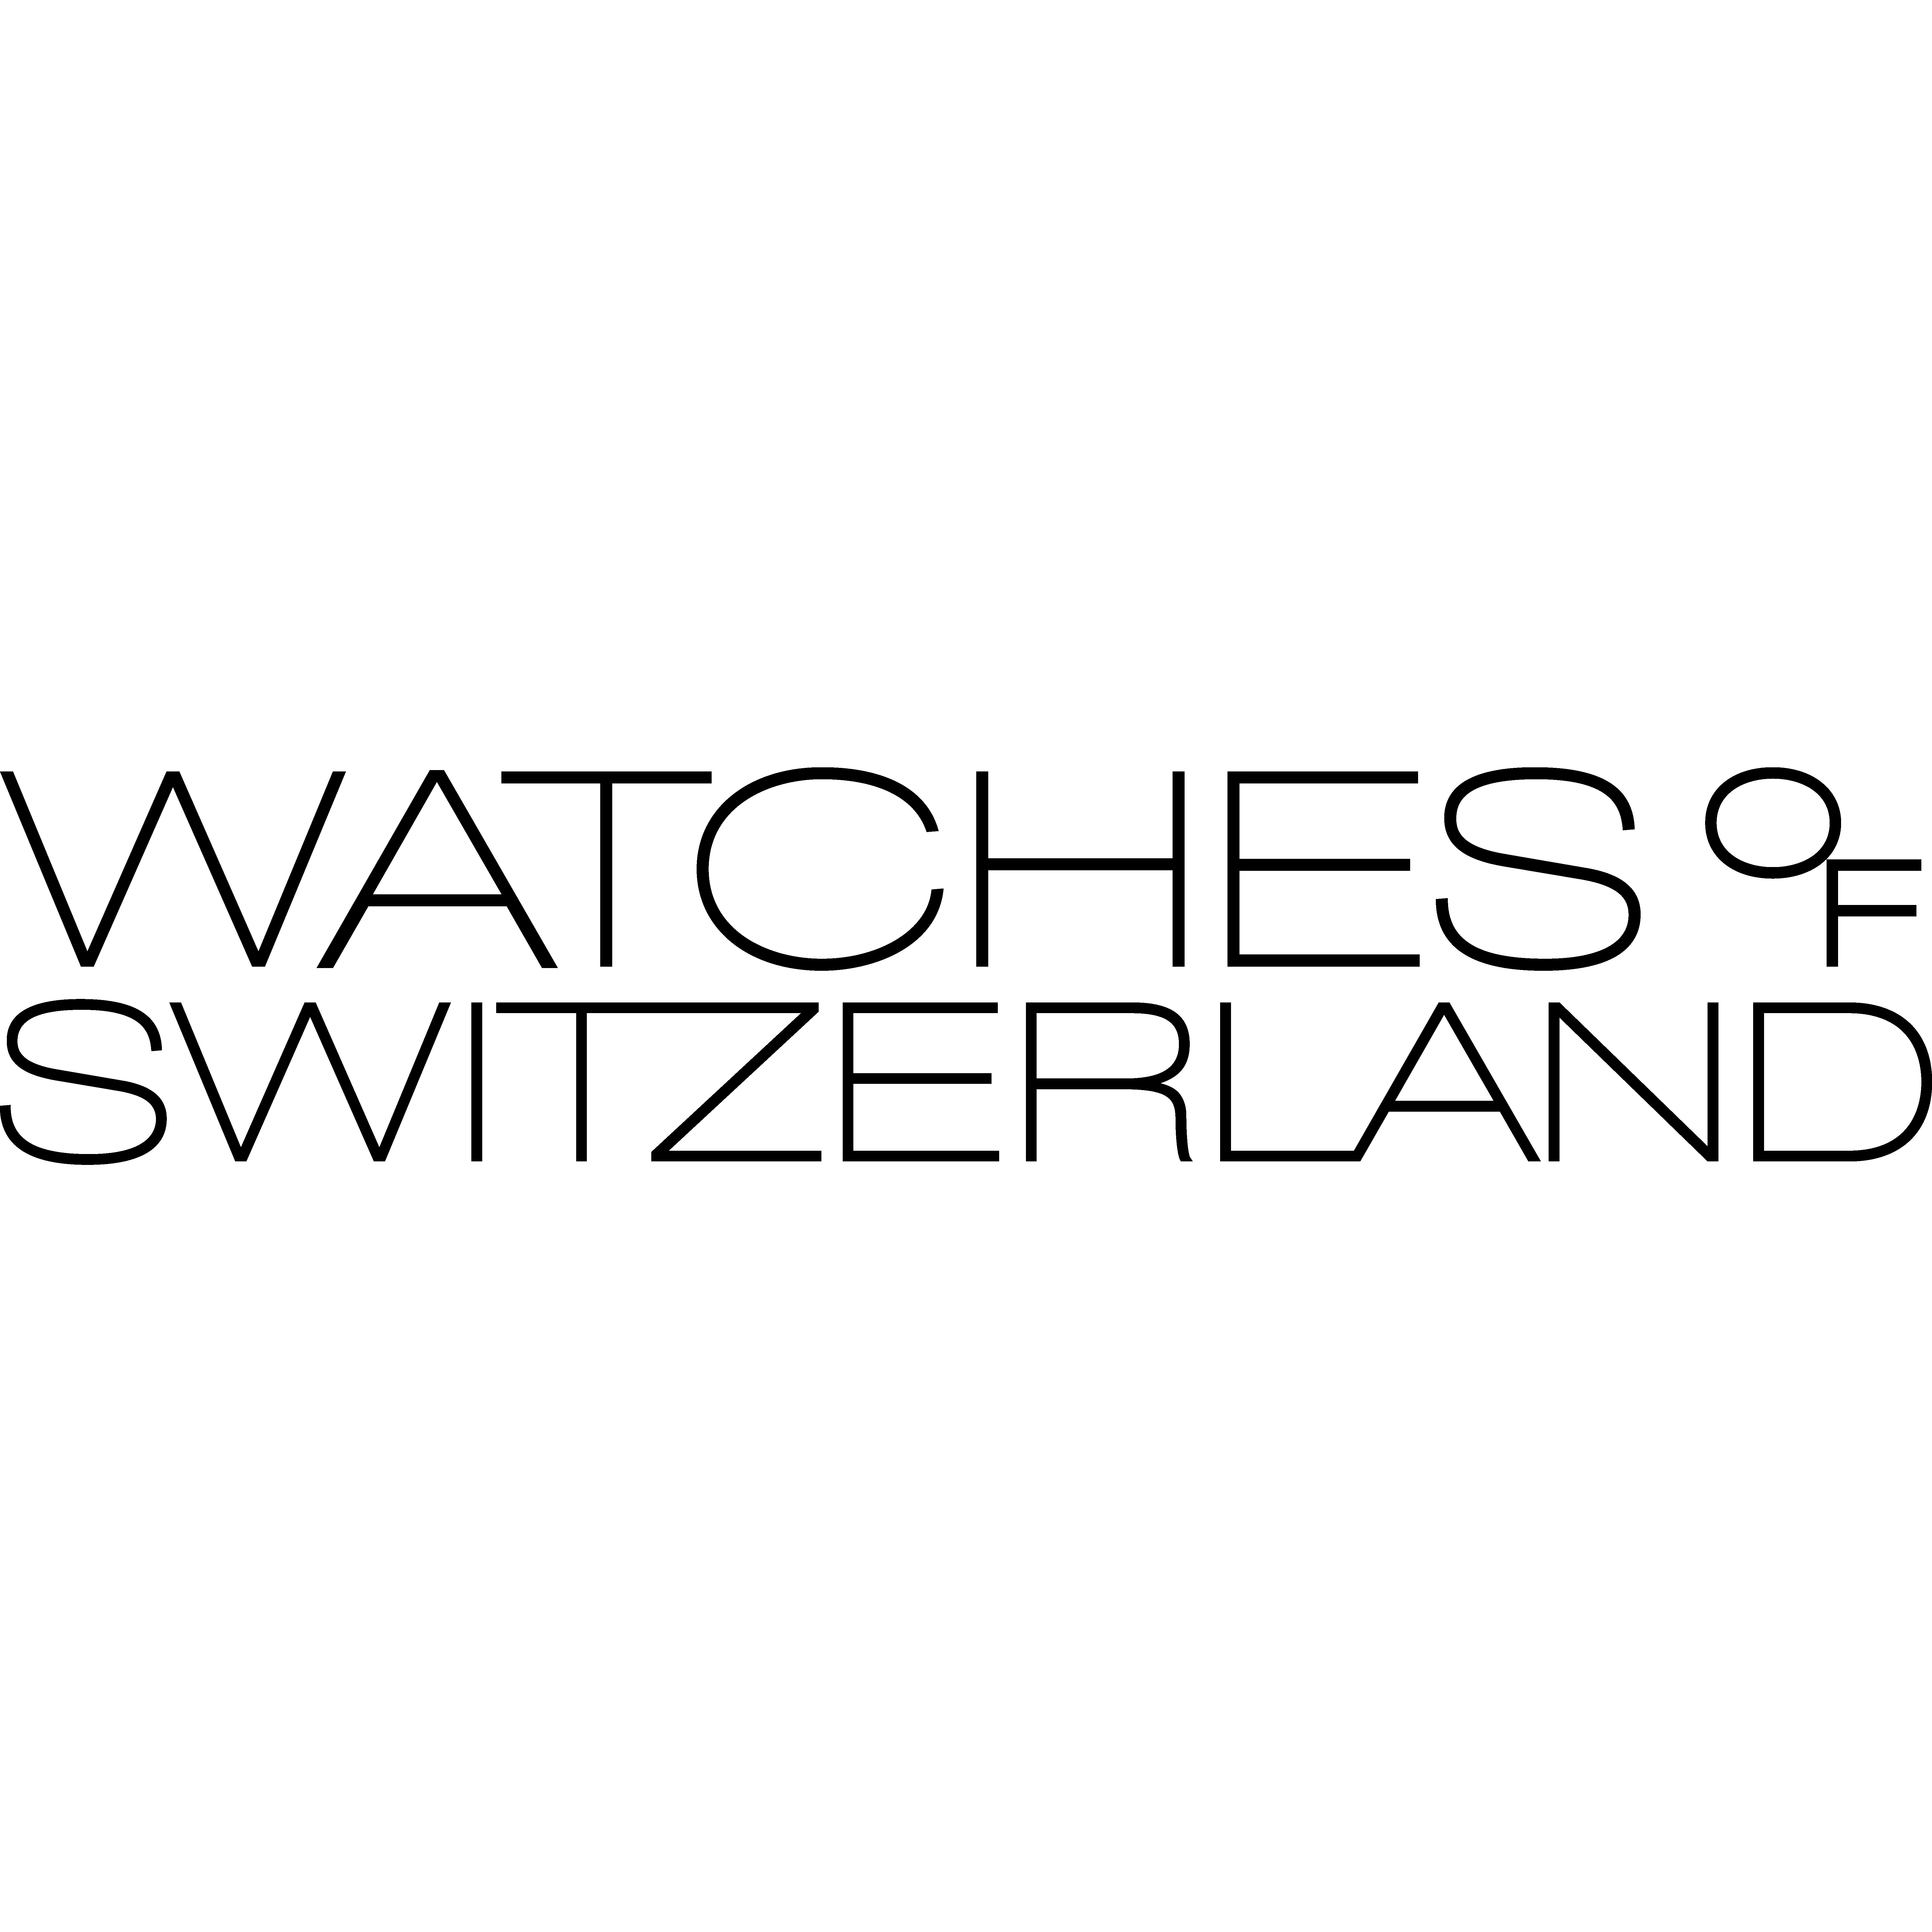 Watches of Switzerland - Birmingham, West Midlands B2 4JH - 01216 430441 | ShowMeLocal.com